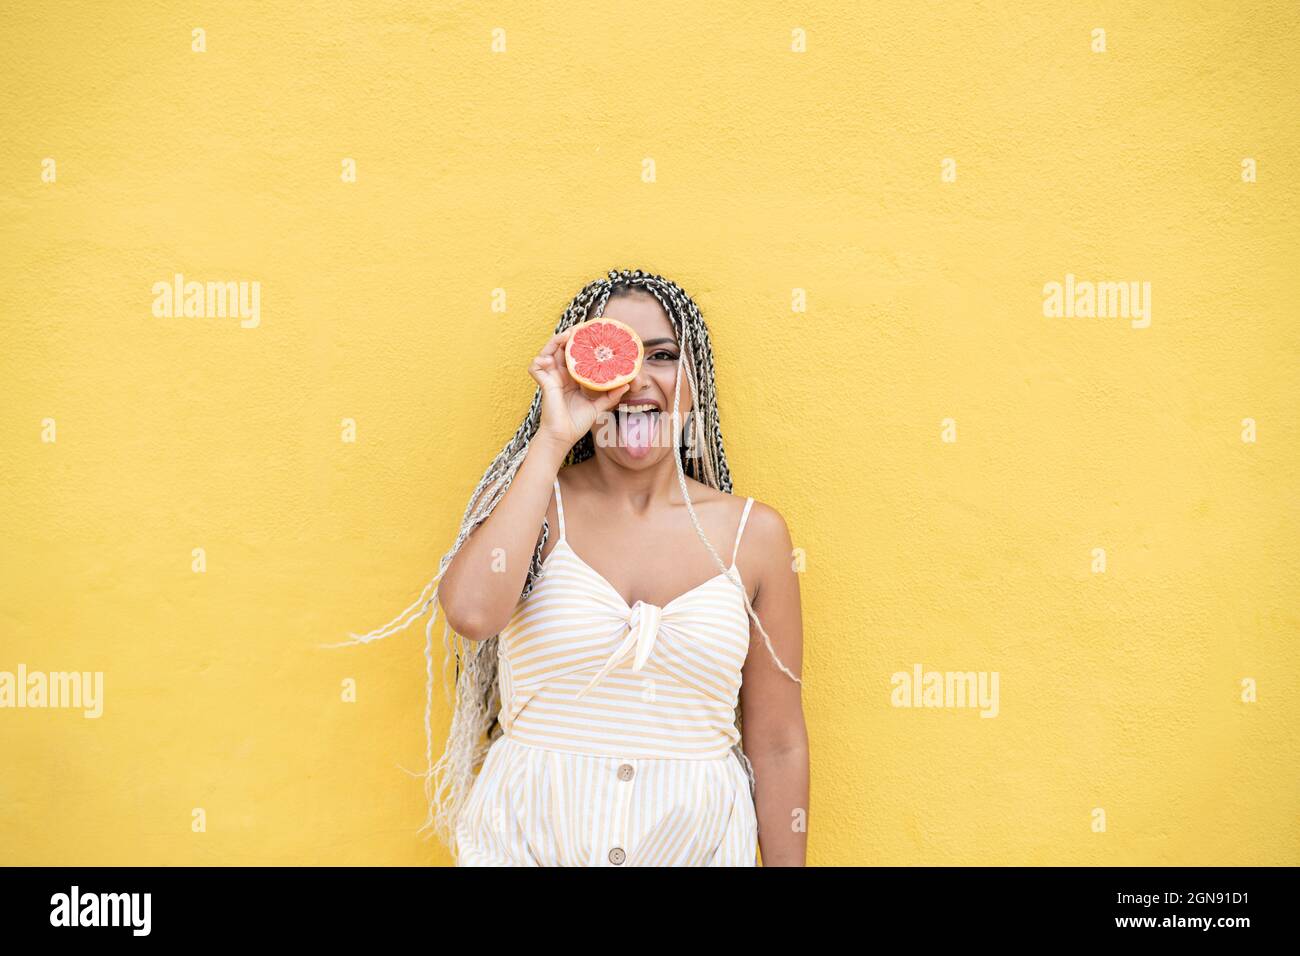 Femme qui colle la langue tout en tenant les agrumes devant les yeux par un mur jaune Banque D'Images